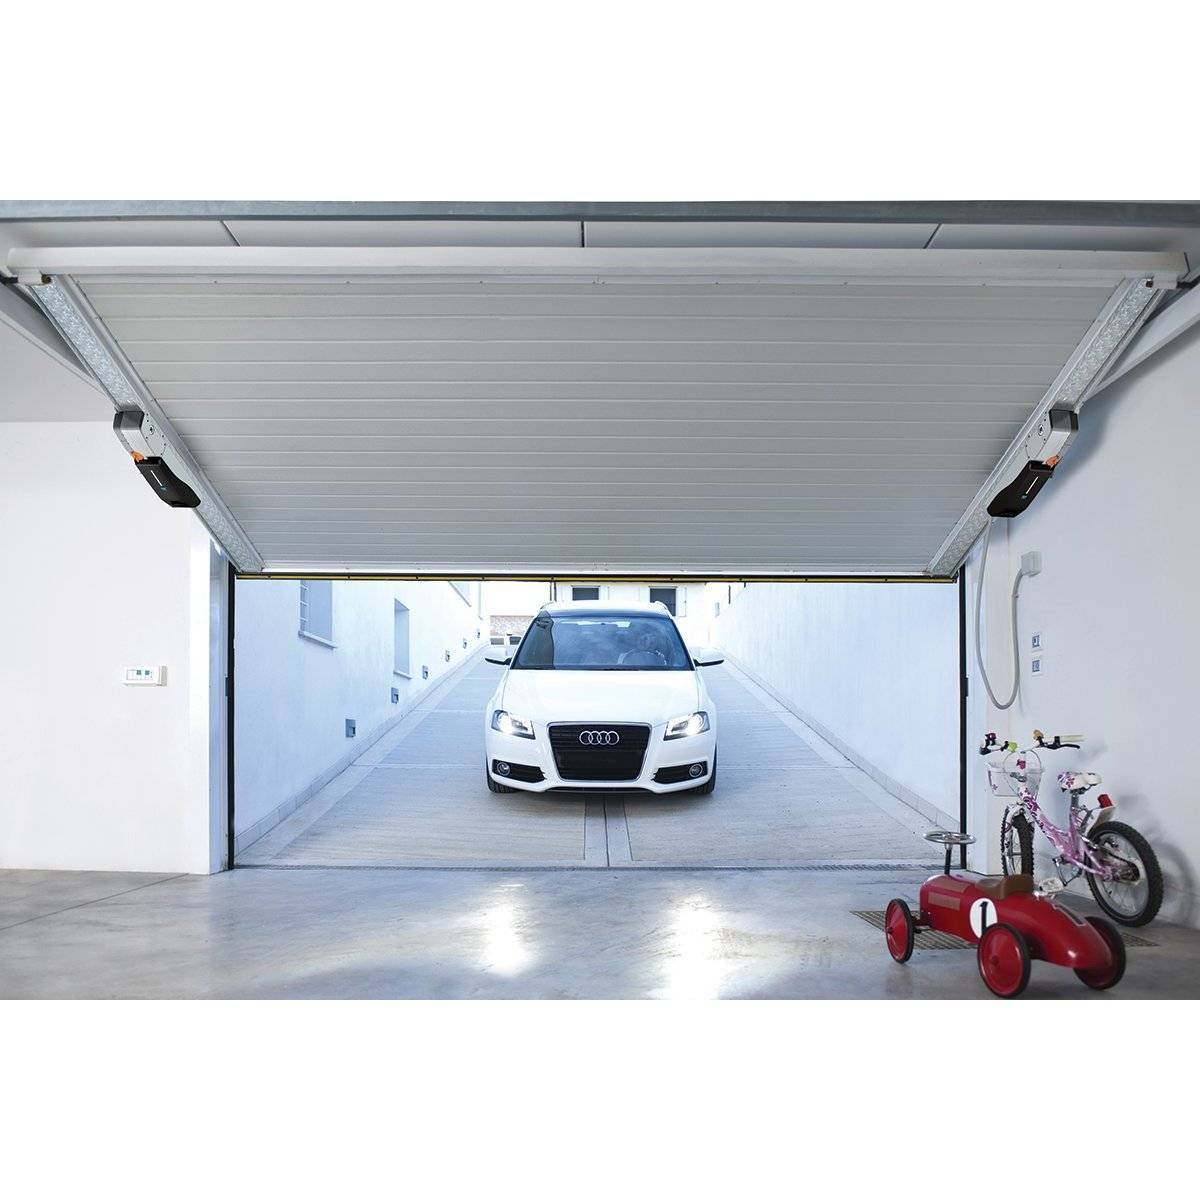 Секционные ворота для гаража: на что обратить внимание, чтобы сделать правильный выбор